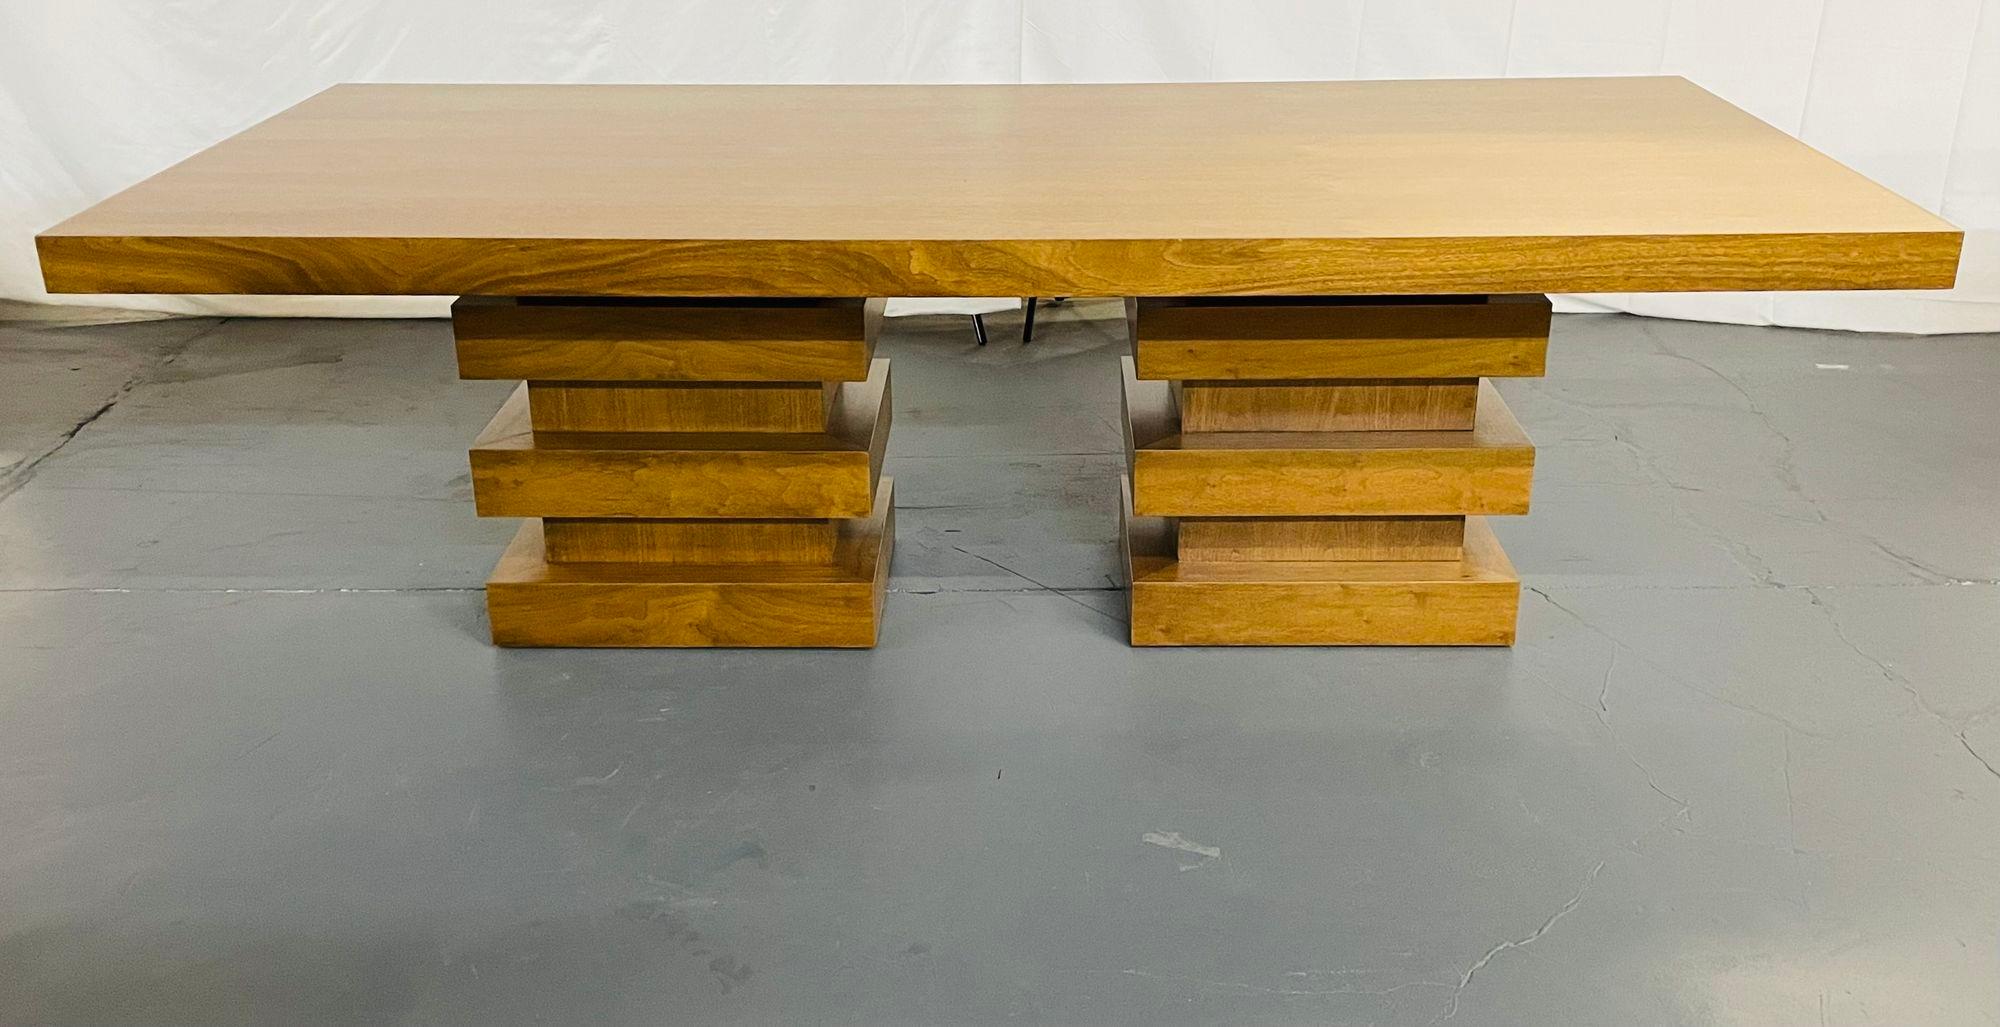 Moderner Eichenholz-Doppelsockel-Ess-/Konferenztisch, geometrisches Design 

Eine Tischplatte aus massiver Eiche, die auf geometrisch gestapelten Doppelsockeln aus massiver Eiche steht. Dieser Tisch hat eine sehr moderne Form und ist in einem